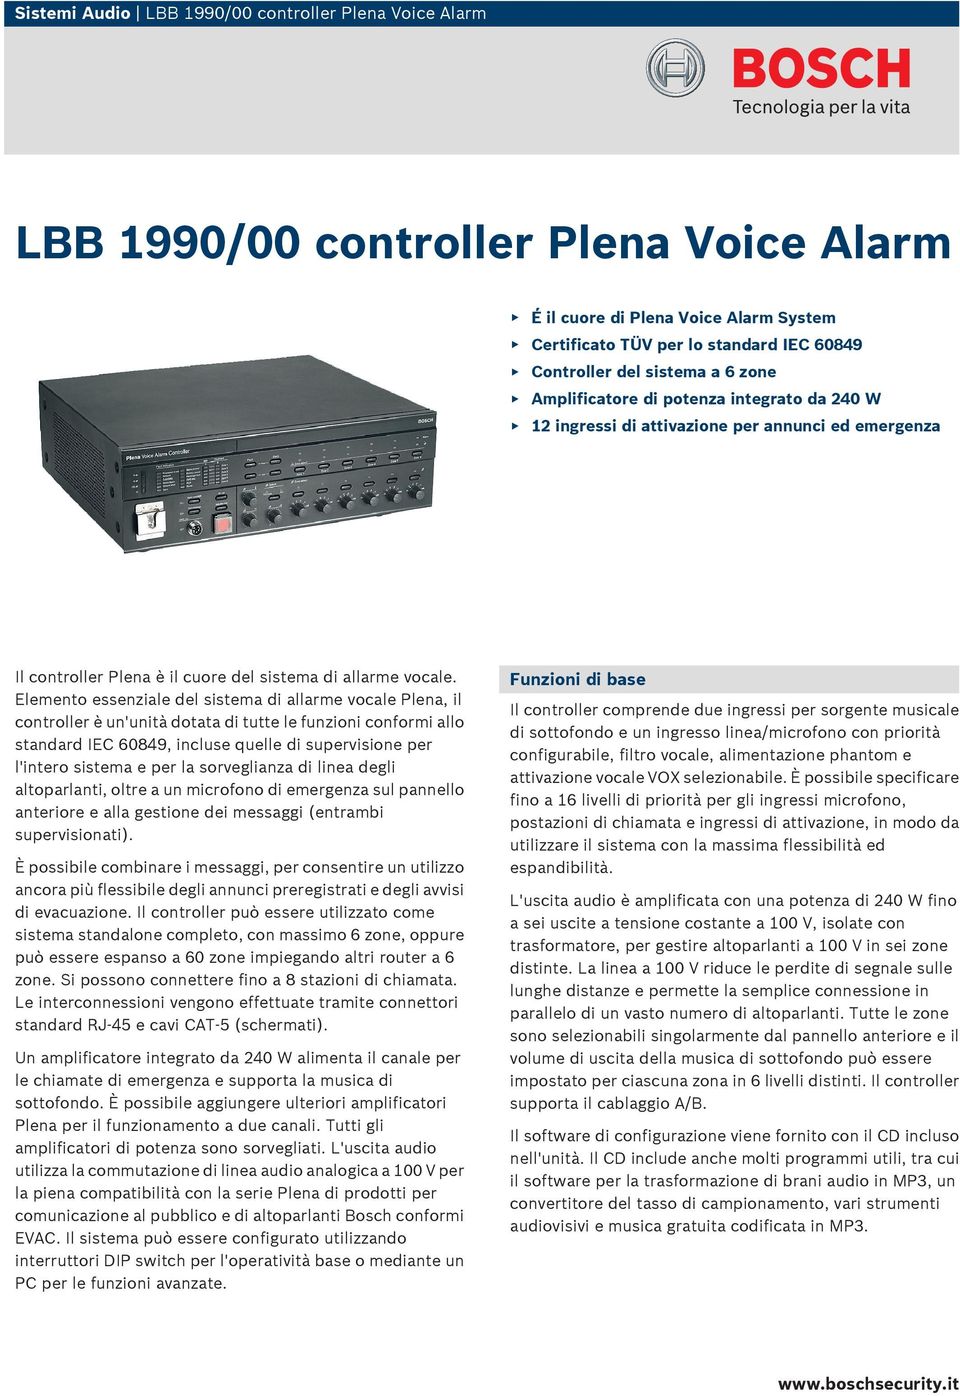 Elemento essenziale del sistema di allarme vocale Plena, il controller è un'unità dotata di tutte le funzioni conformi allo standard IEC 60849, incluse quelle di supervisione per l'intero sistema e